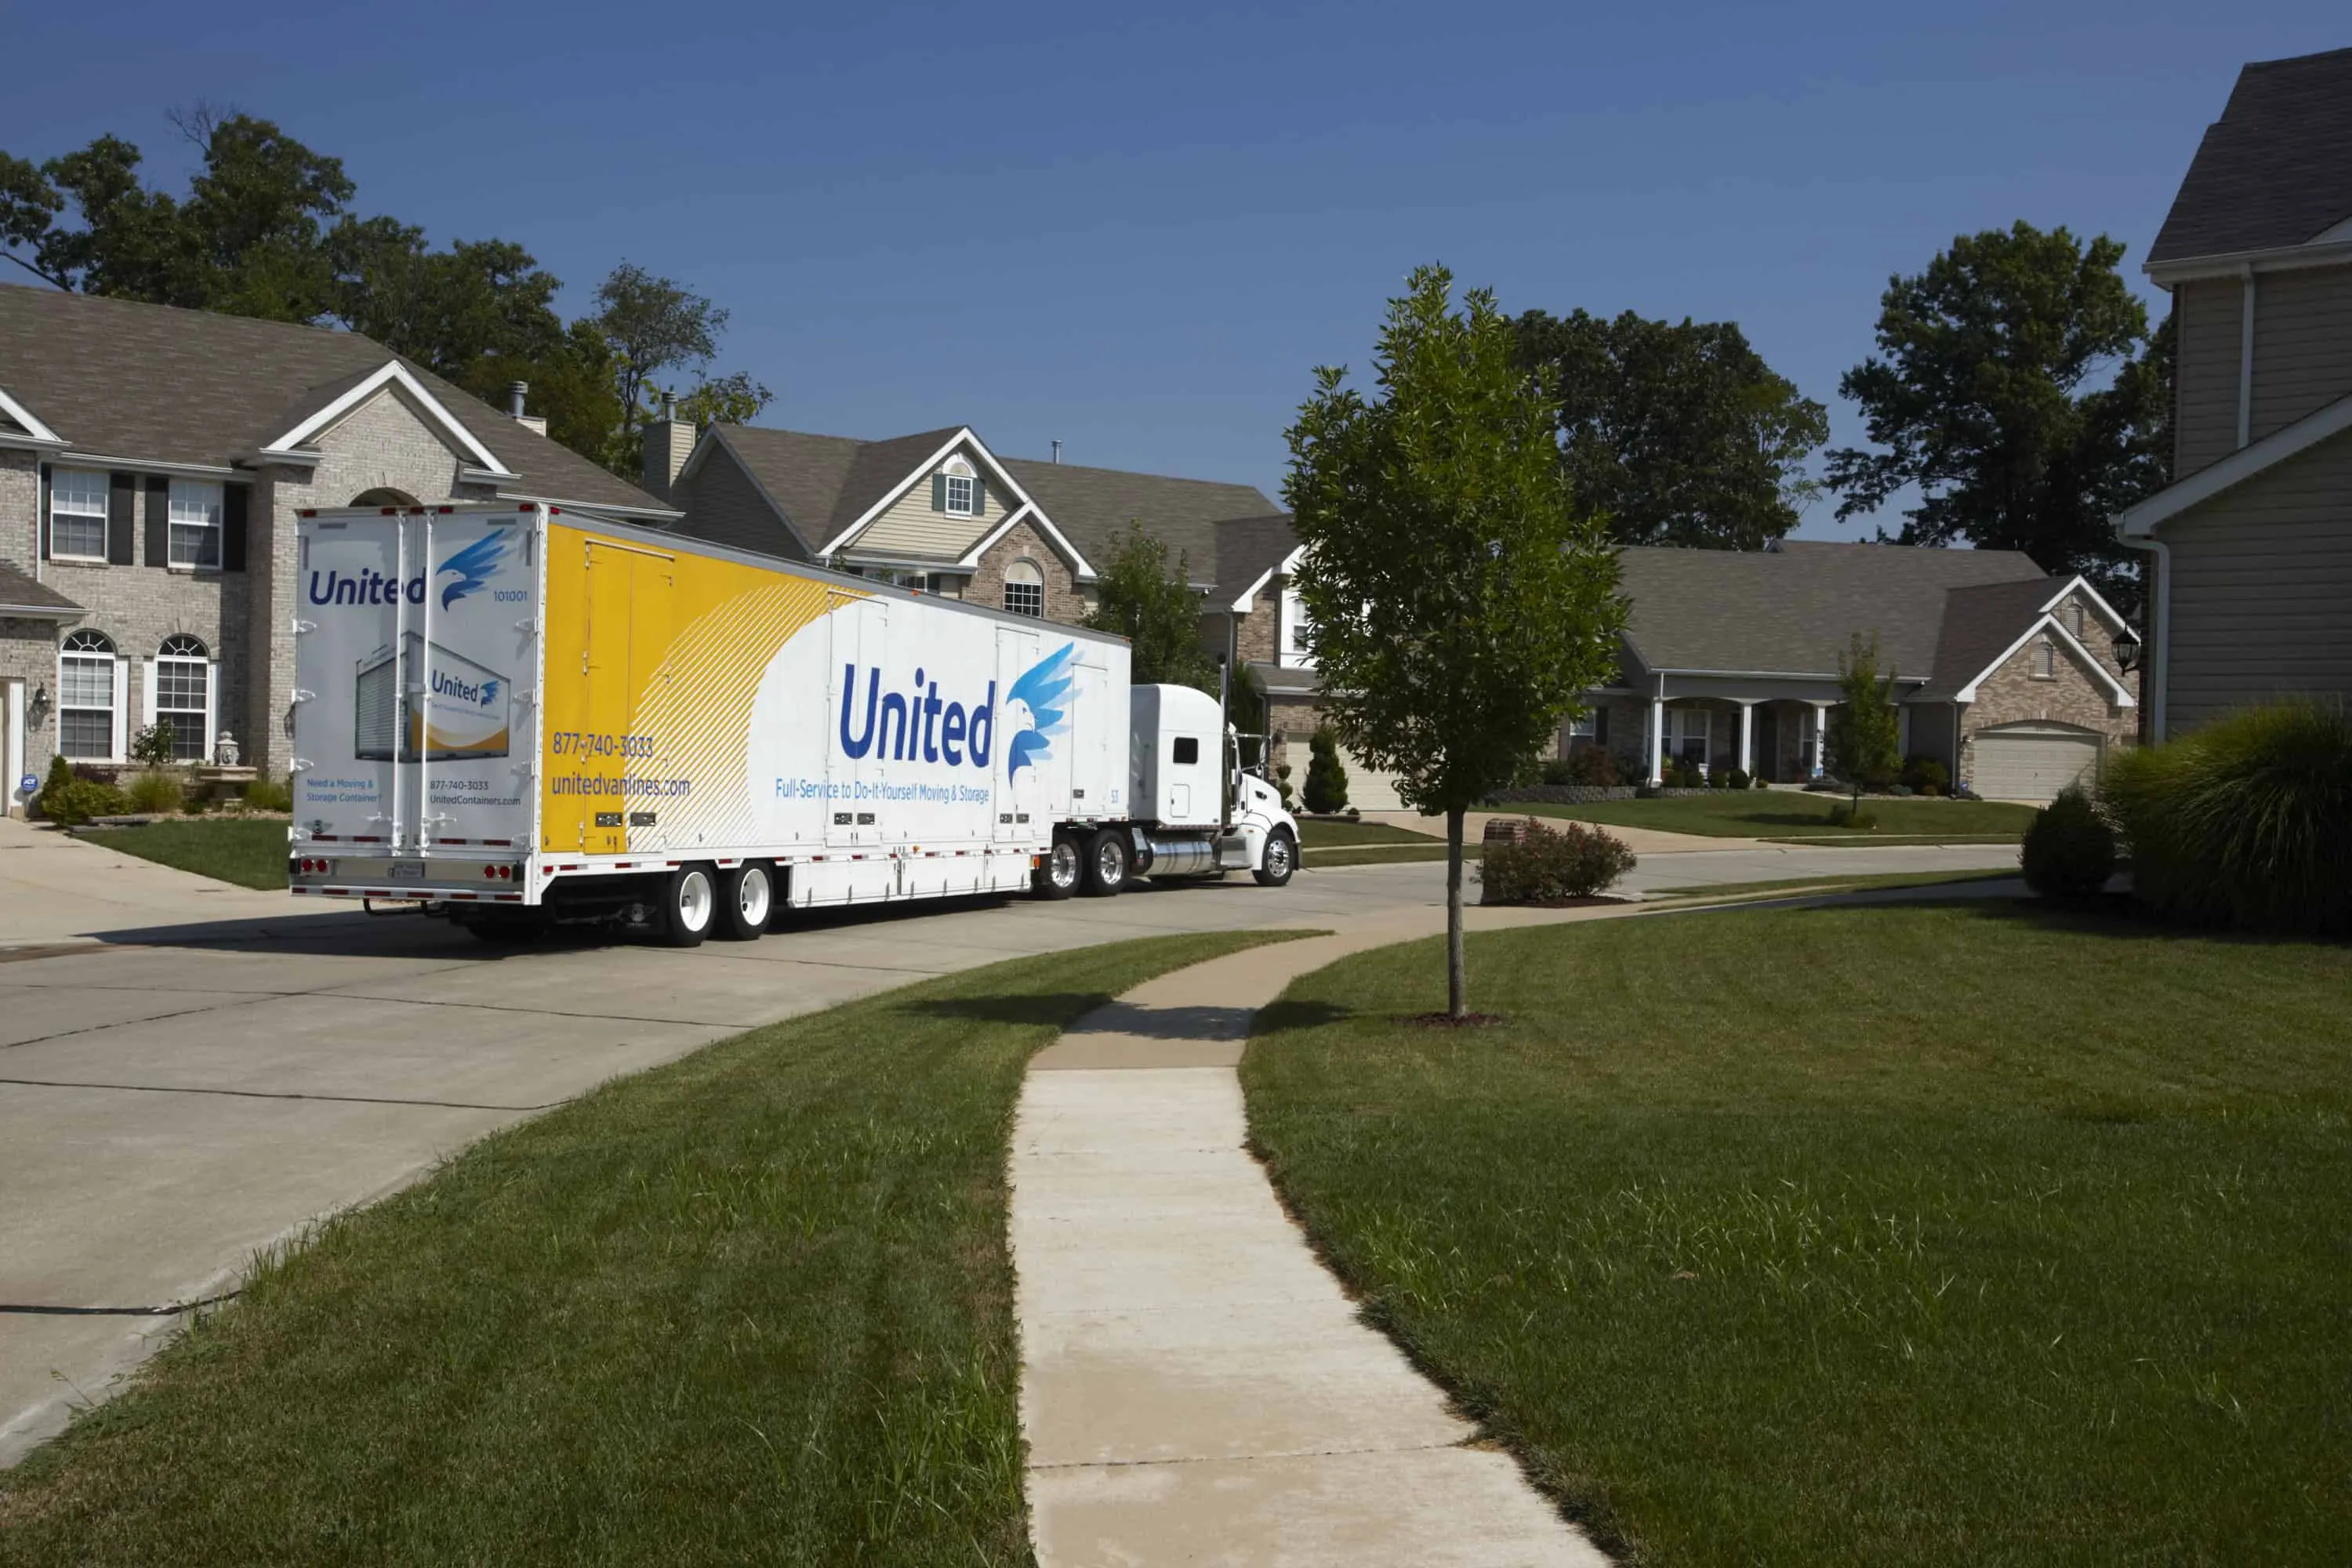 United Van Lines truck driving out of a residential neighborhood - United Van Lines®